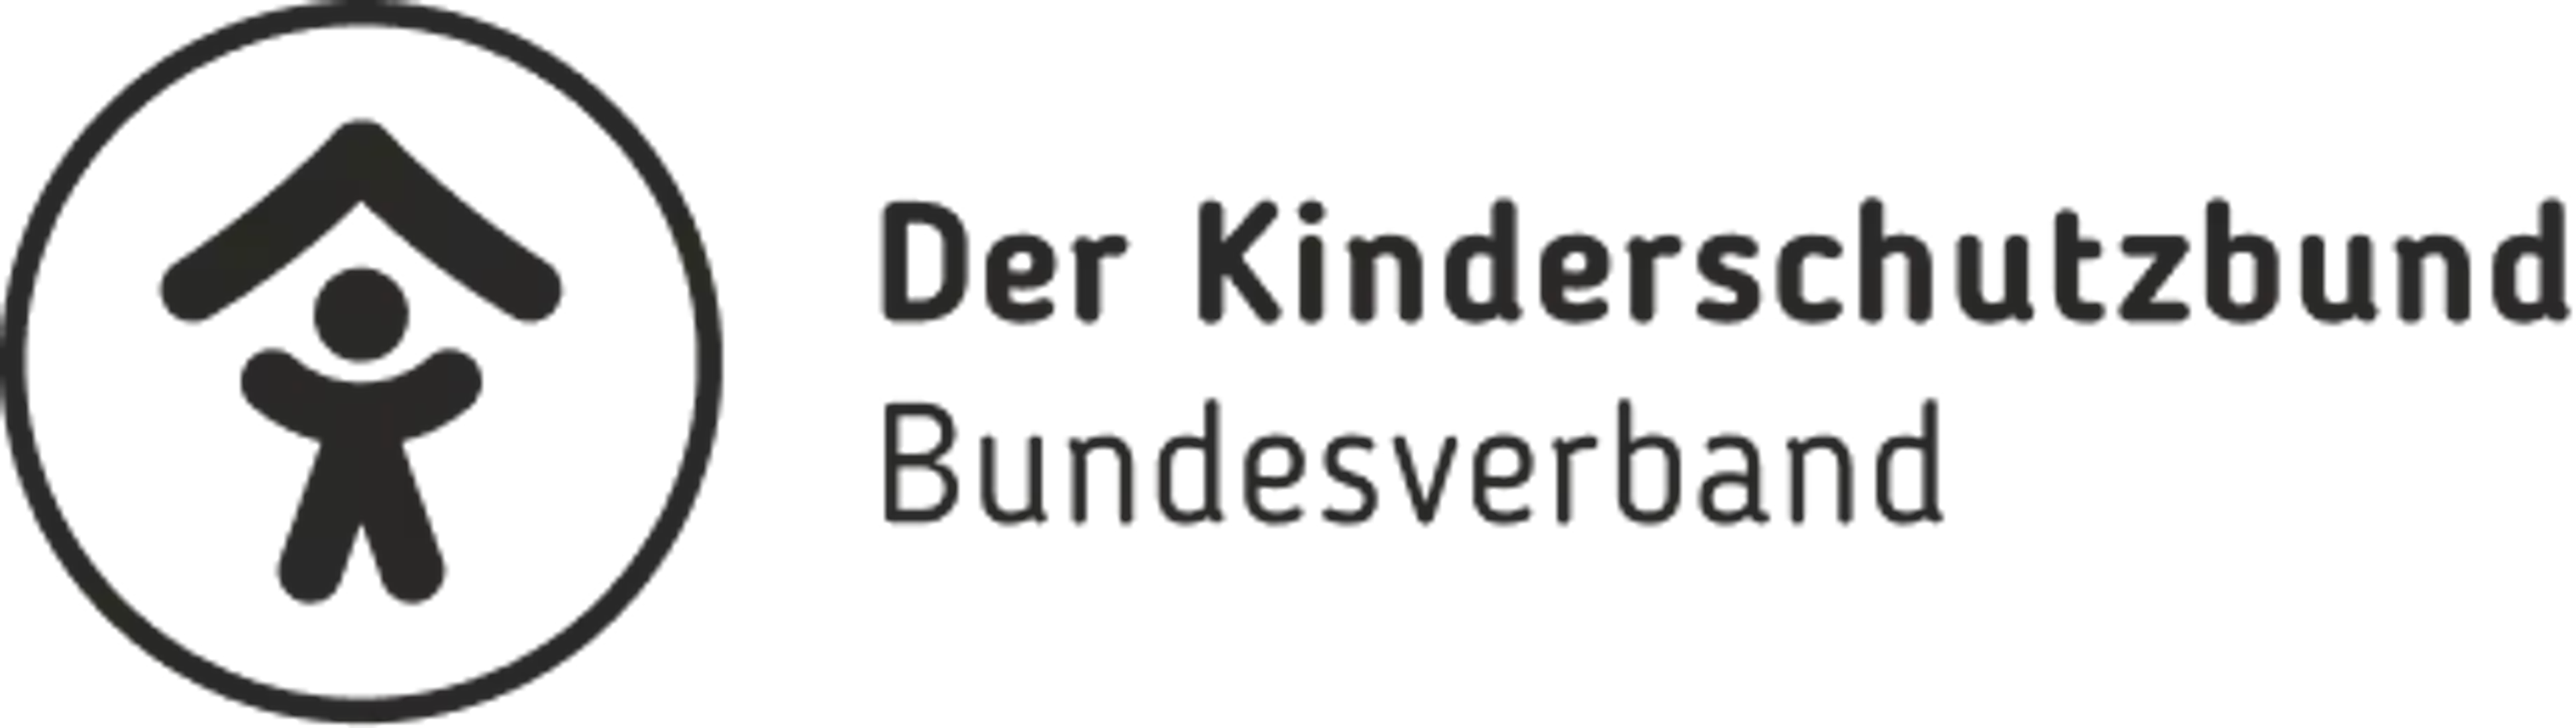 Der Kinderschutzbund Bundesverband Logo